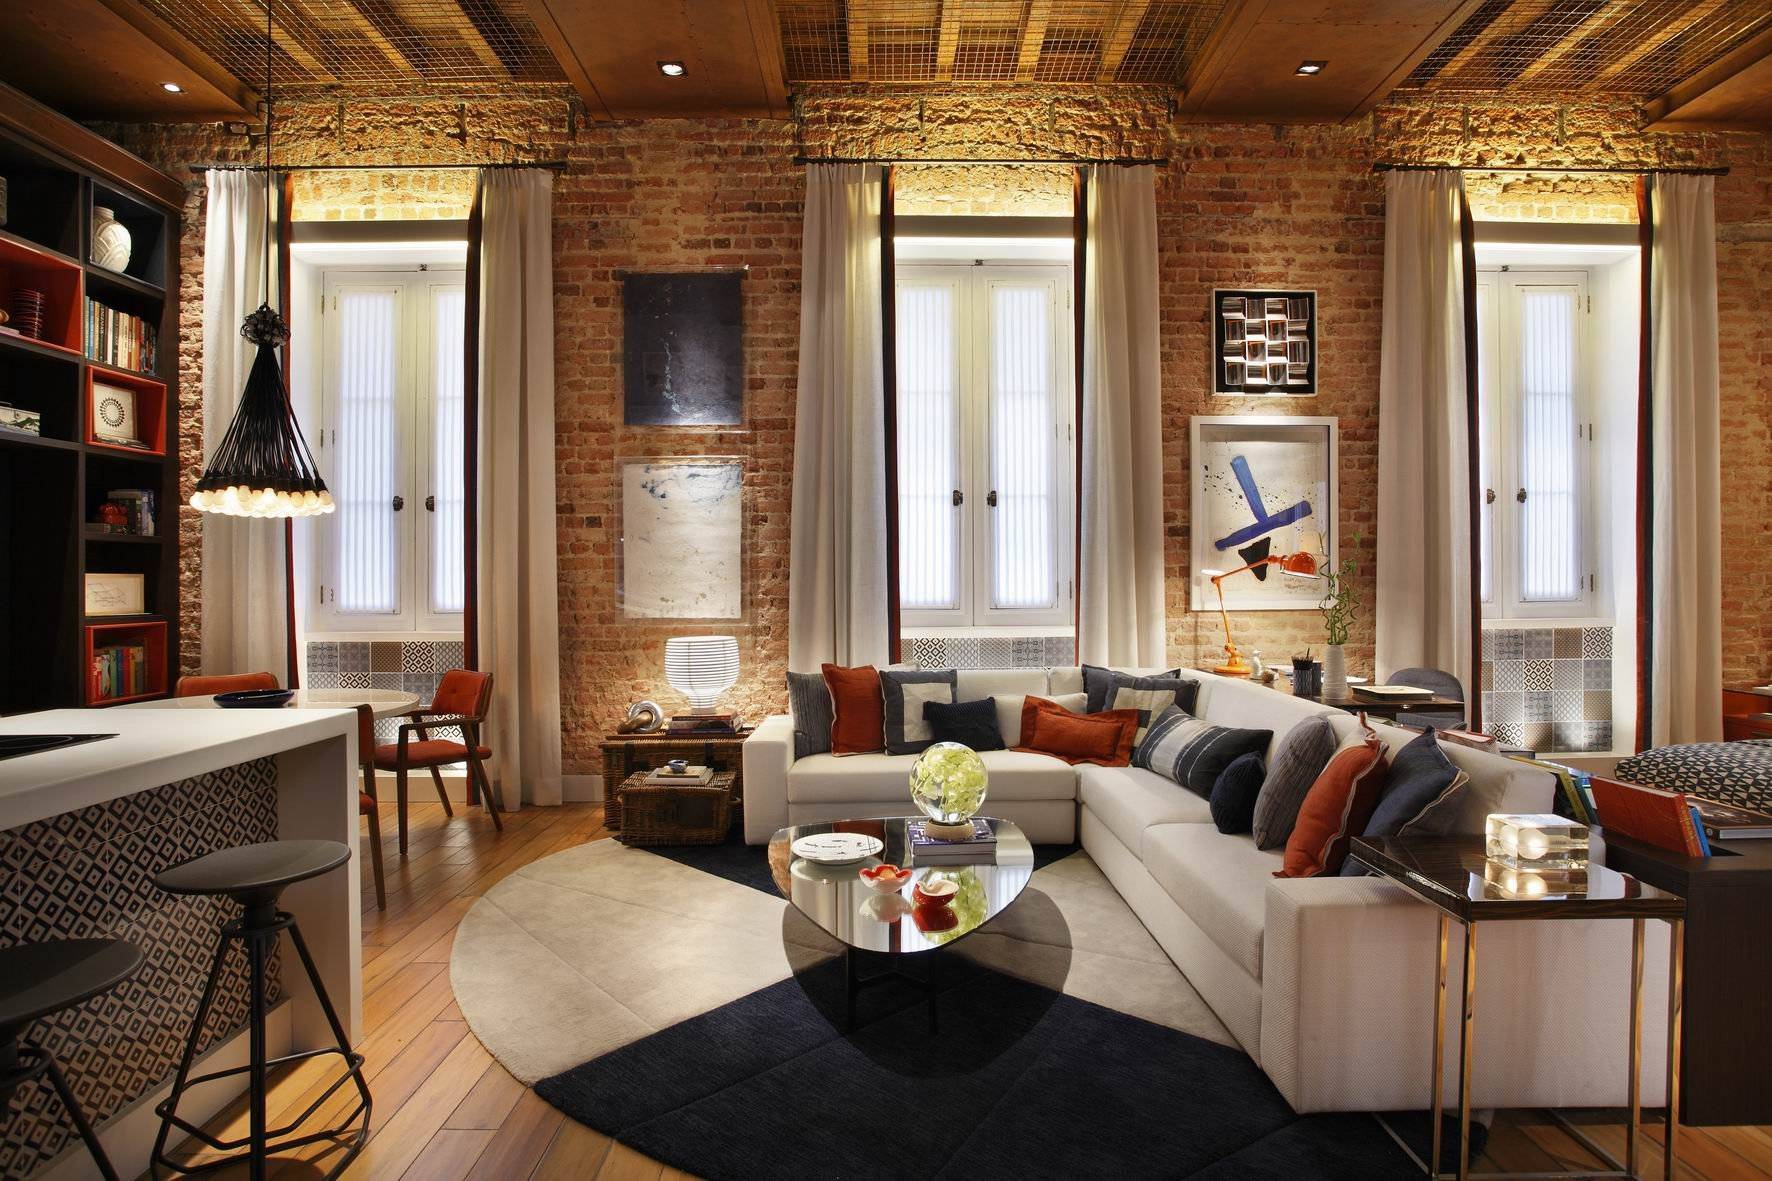 Современный интерьер квартиры - 110 лучших фото модного дизайна